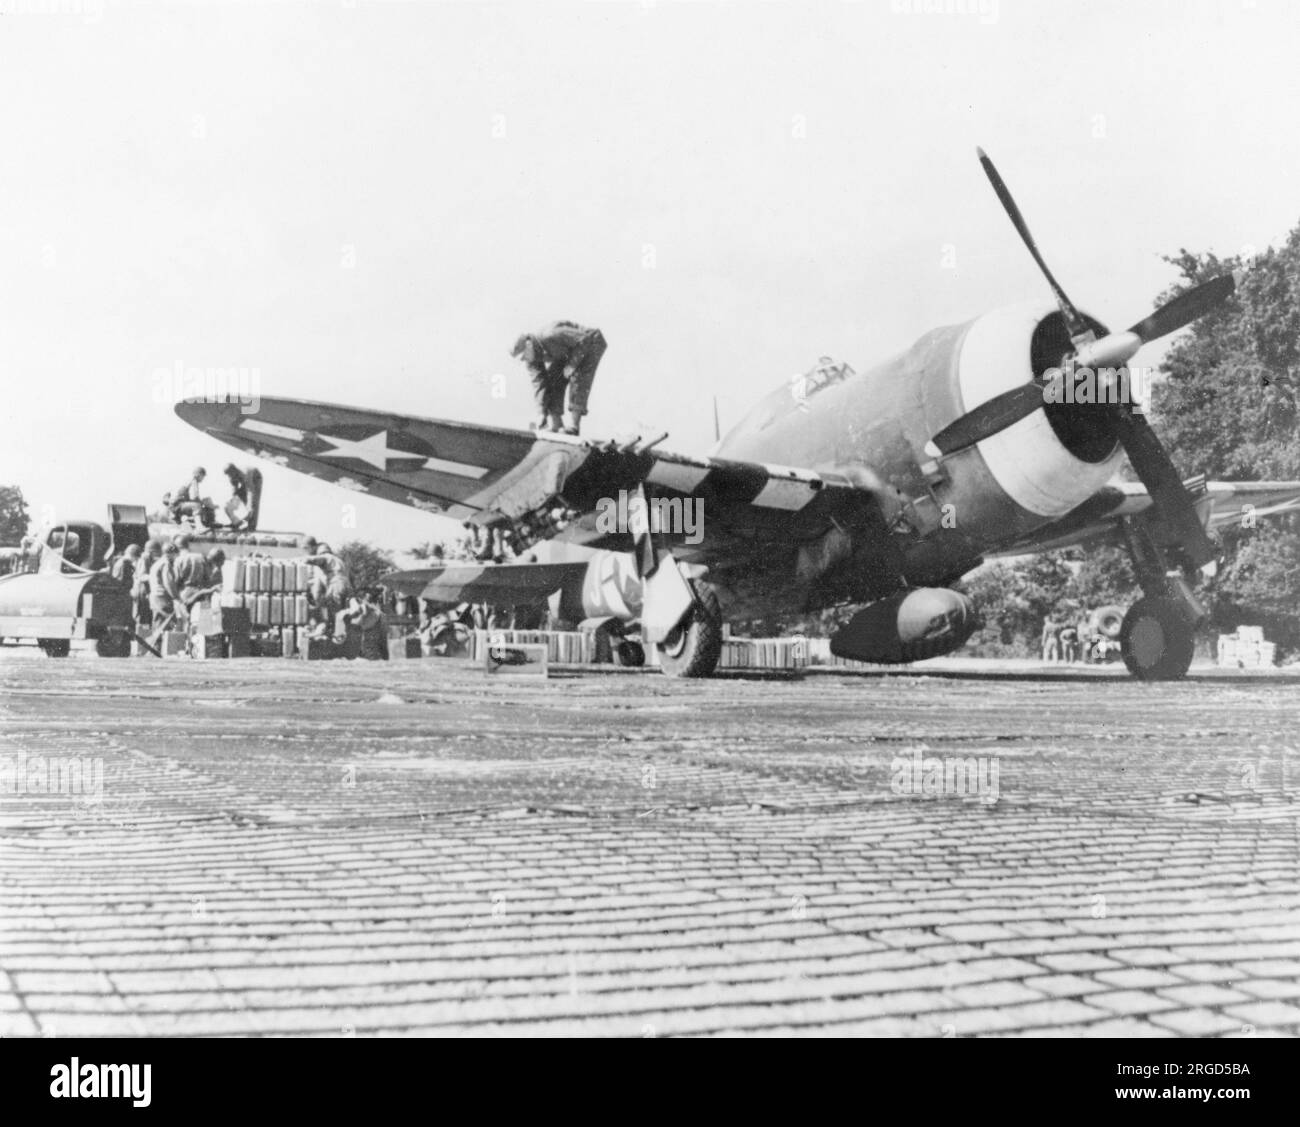 United States Air Force - Republic P-47C Thunderbolt en cours de ravitaillement au point de ravitaillement sur un terrain d'atterrissage avancé en France, fin 1944. (Notez le suivi de Sommerfeld, utilisé pour créer des positions difficiles d'avions et des voies de circulation sur les sites verts). Banque D'Images